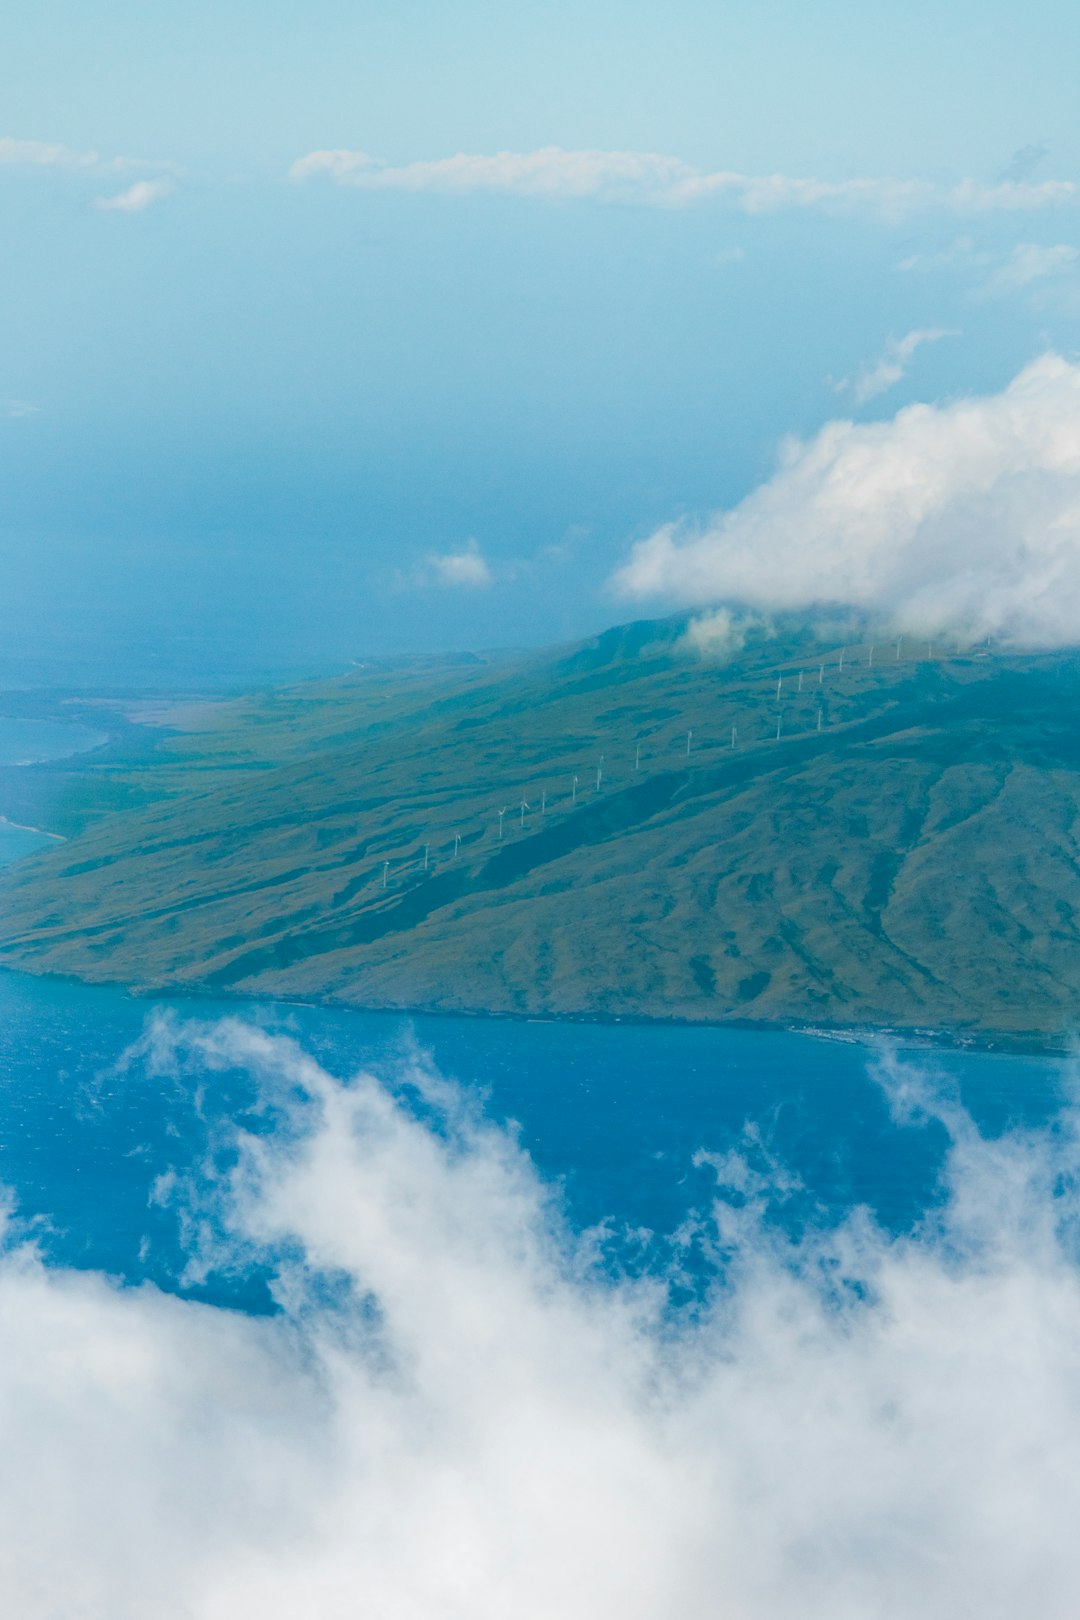 Mountain range photo spot Maui County Haleakalā